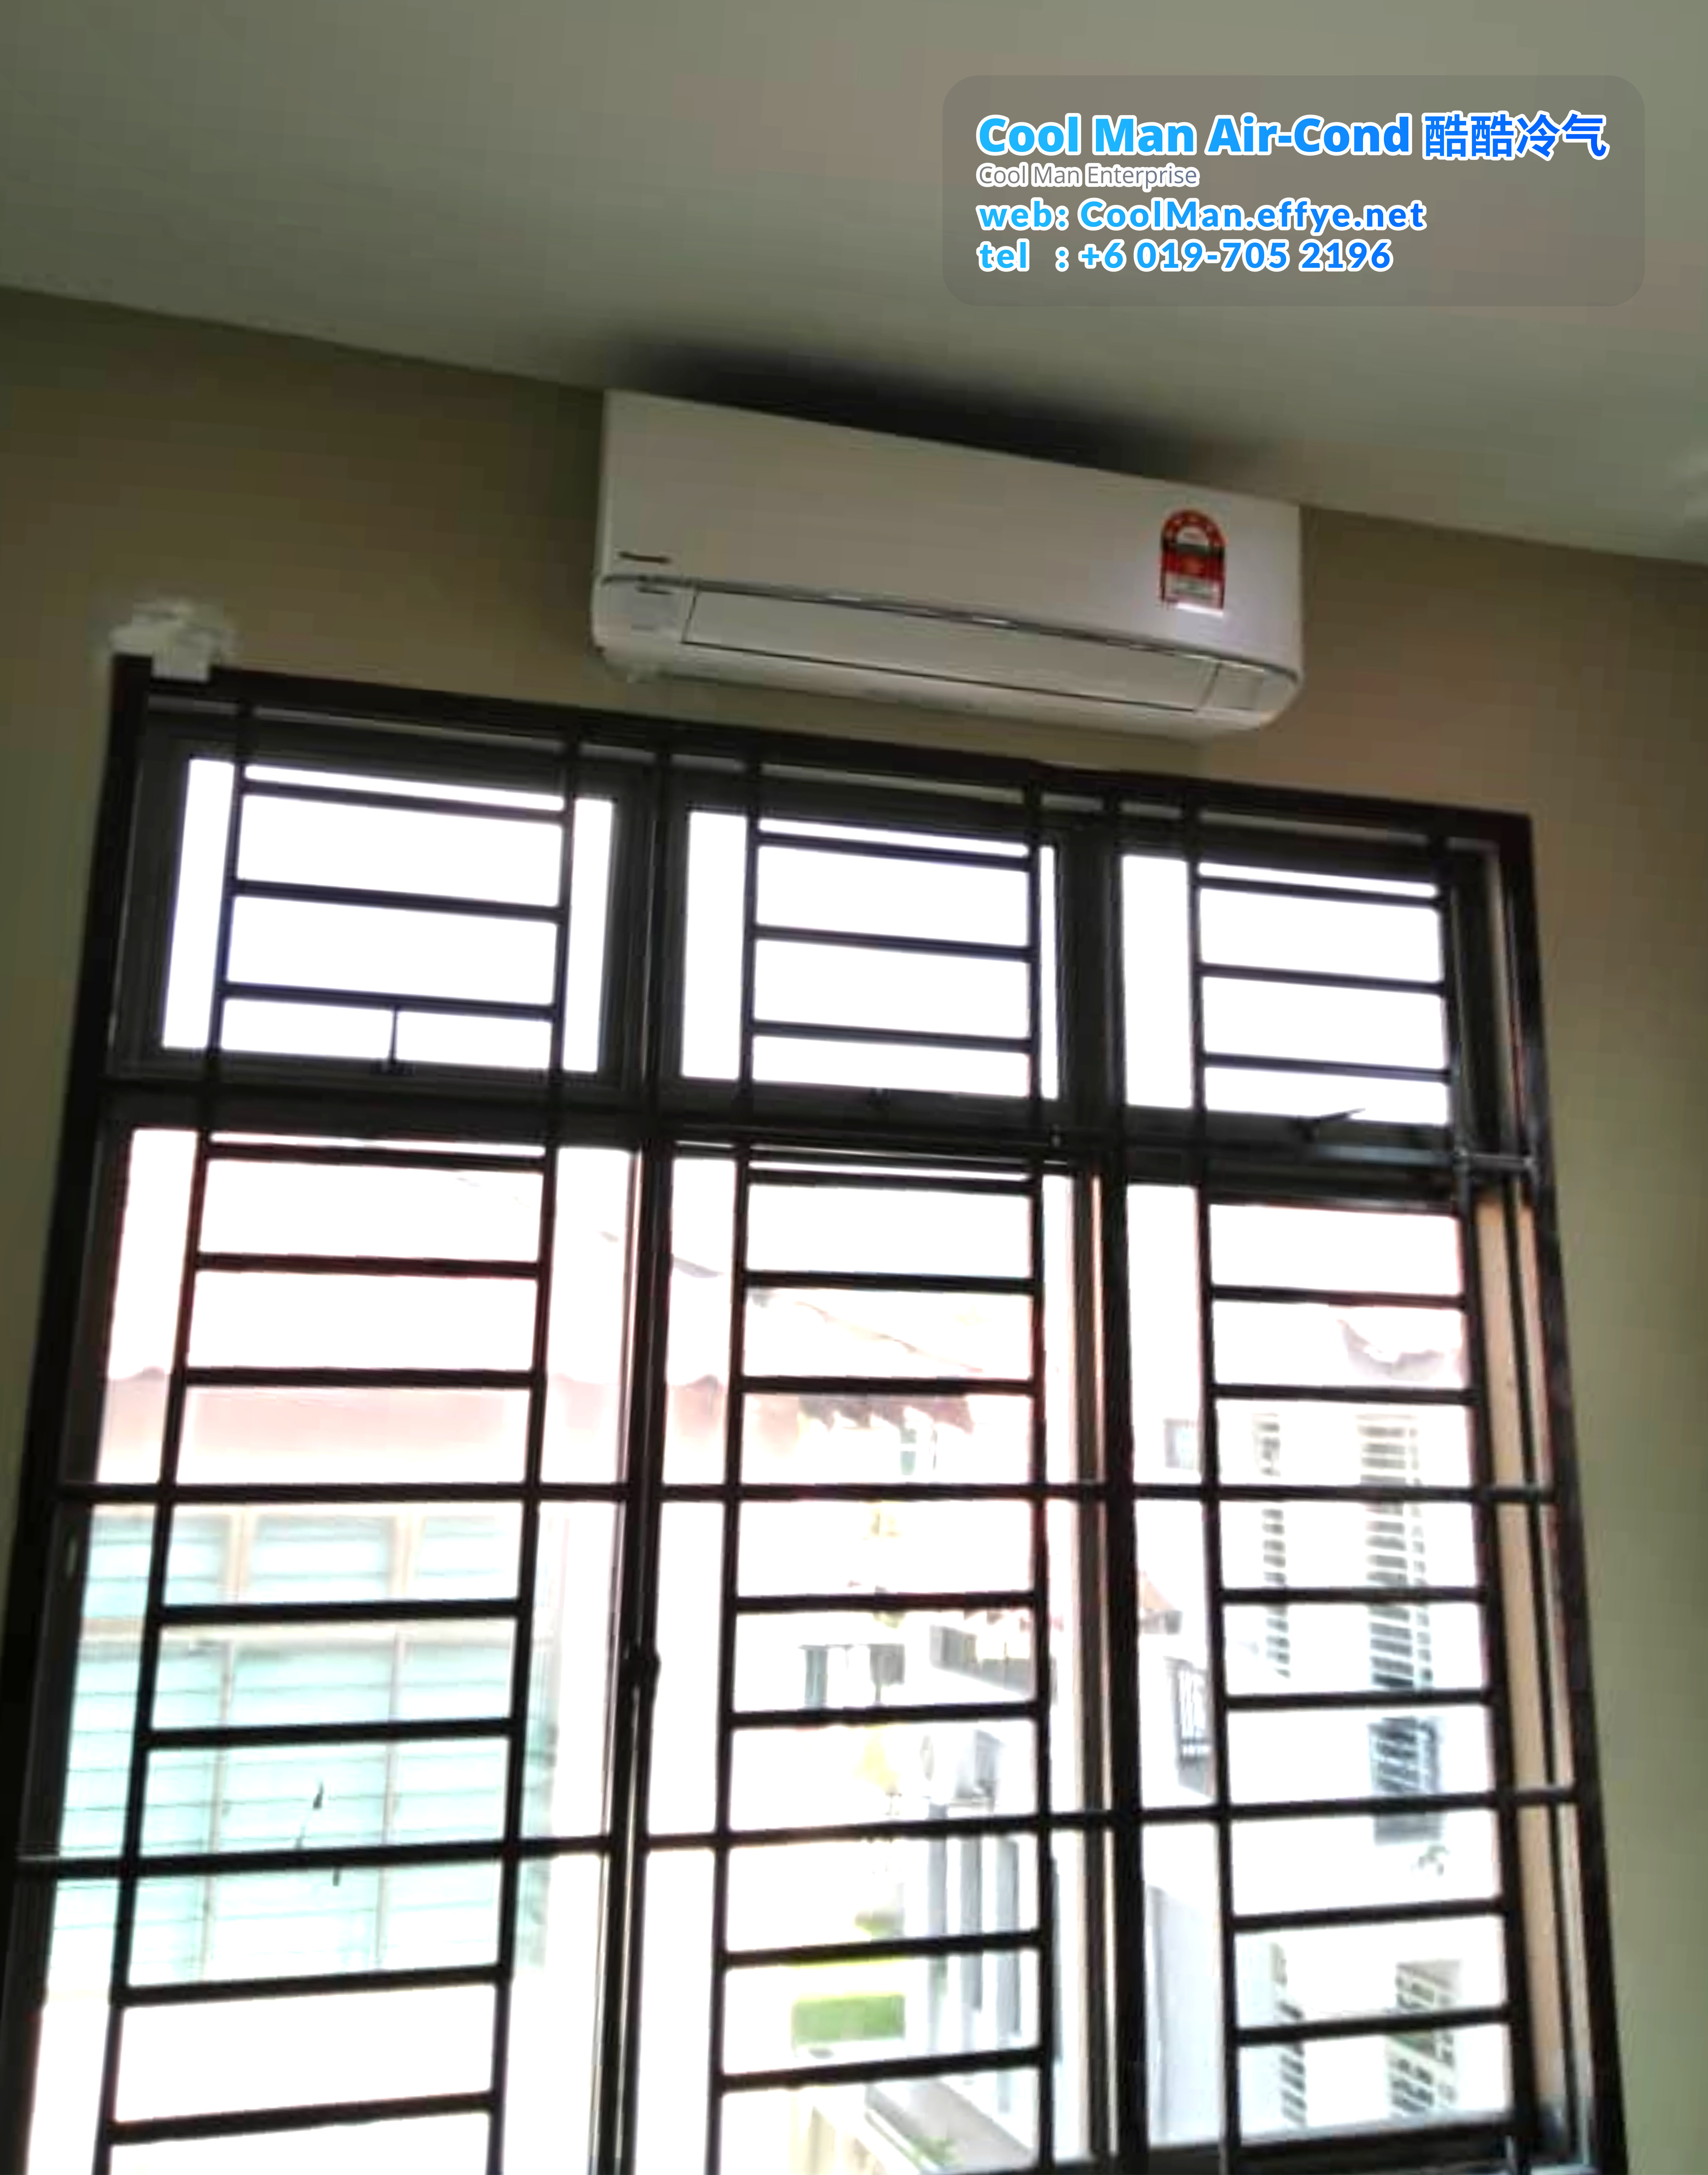 Cool Man Air-Cond Batu Pahat Air Cond Service Air-Cond Installation Air Conditioning 酷酷冷气 冷气维修服务 冷器安装 峇株巴辖 冷气服务 A09